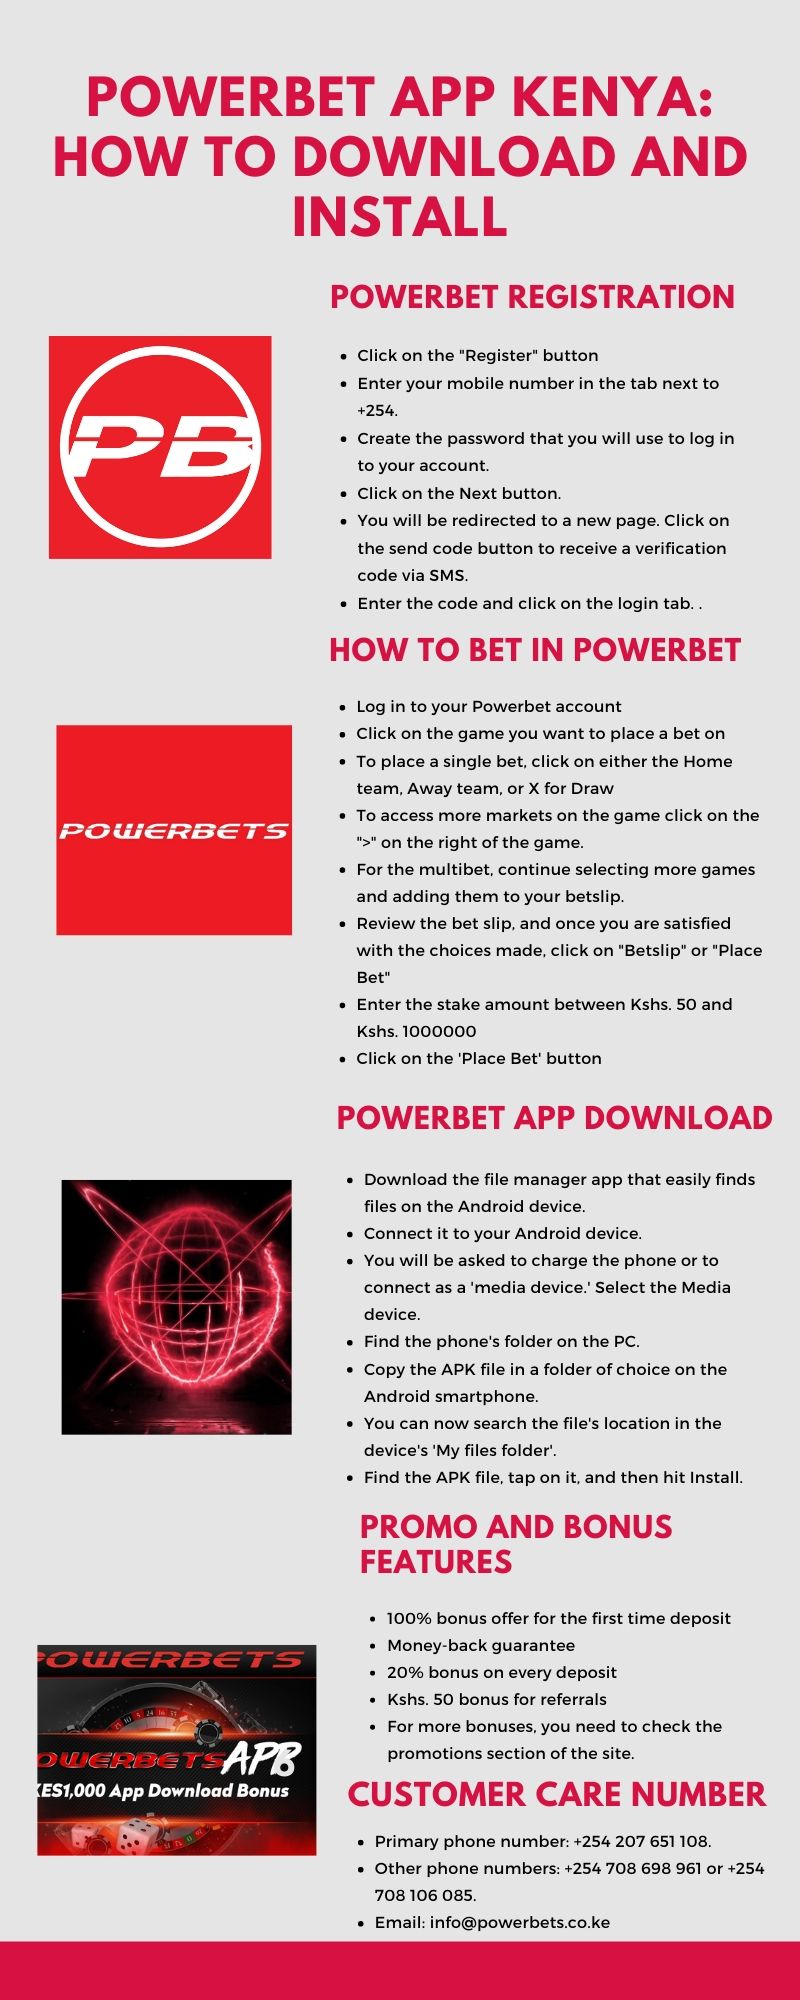 Power bet download app